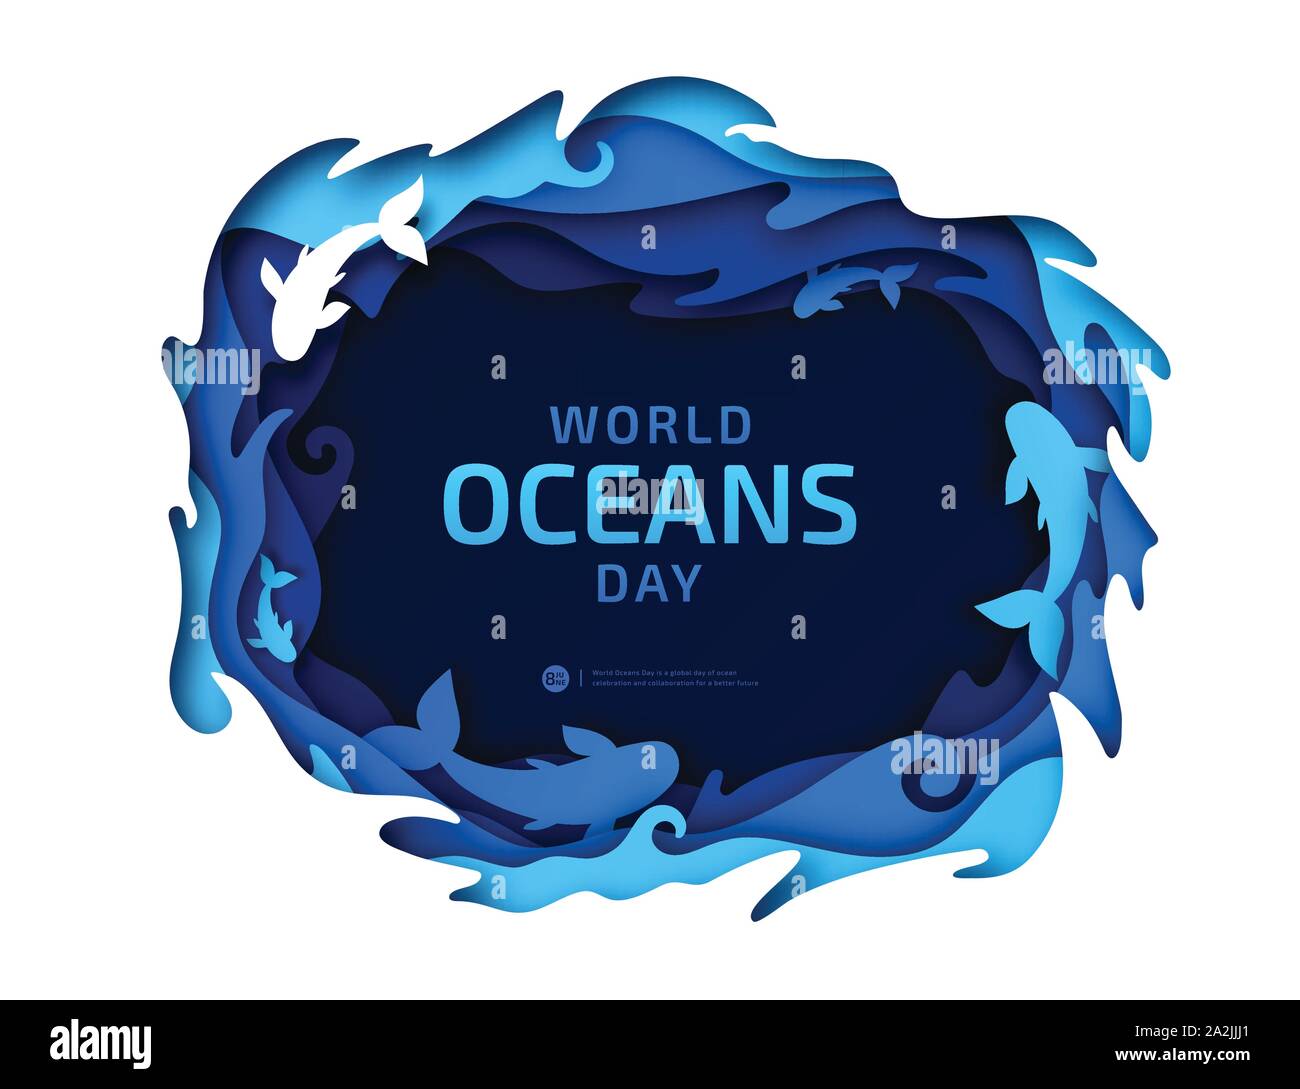 Arte della carta del mondo degli oceani giorno. Globale celebrazione dedicata a proteggere e conservare gli oceani del mondo, acqua, mondo sottomarino, ecosistema, ecologia. Illustrazione Vettoriale